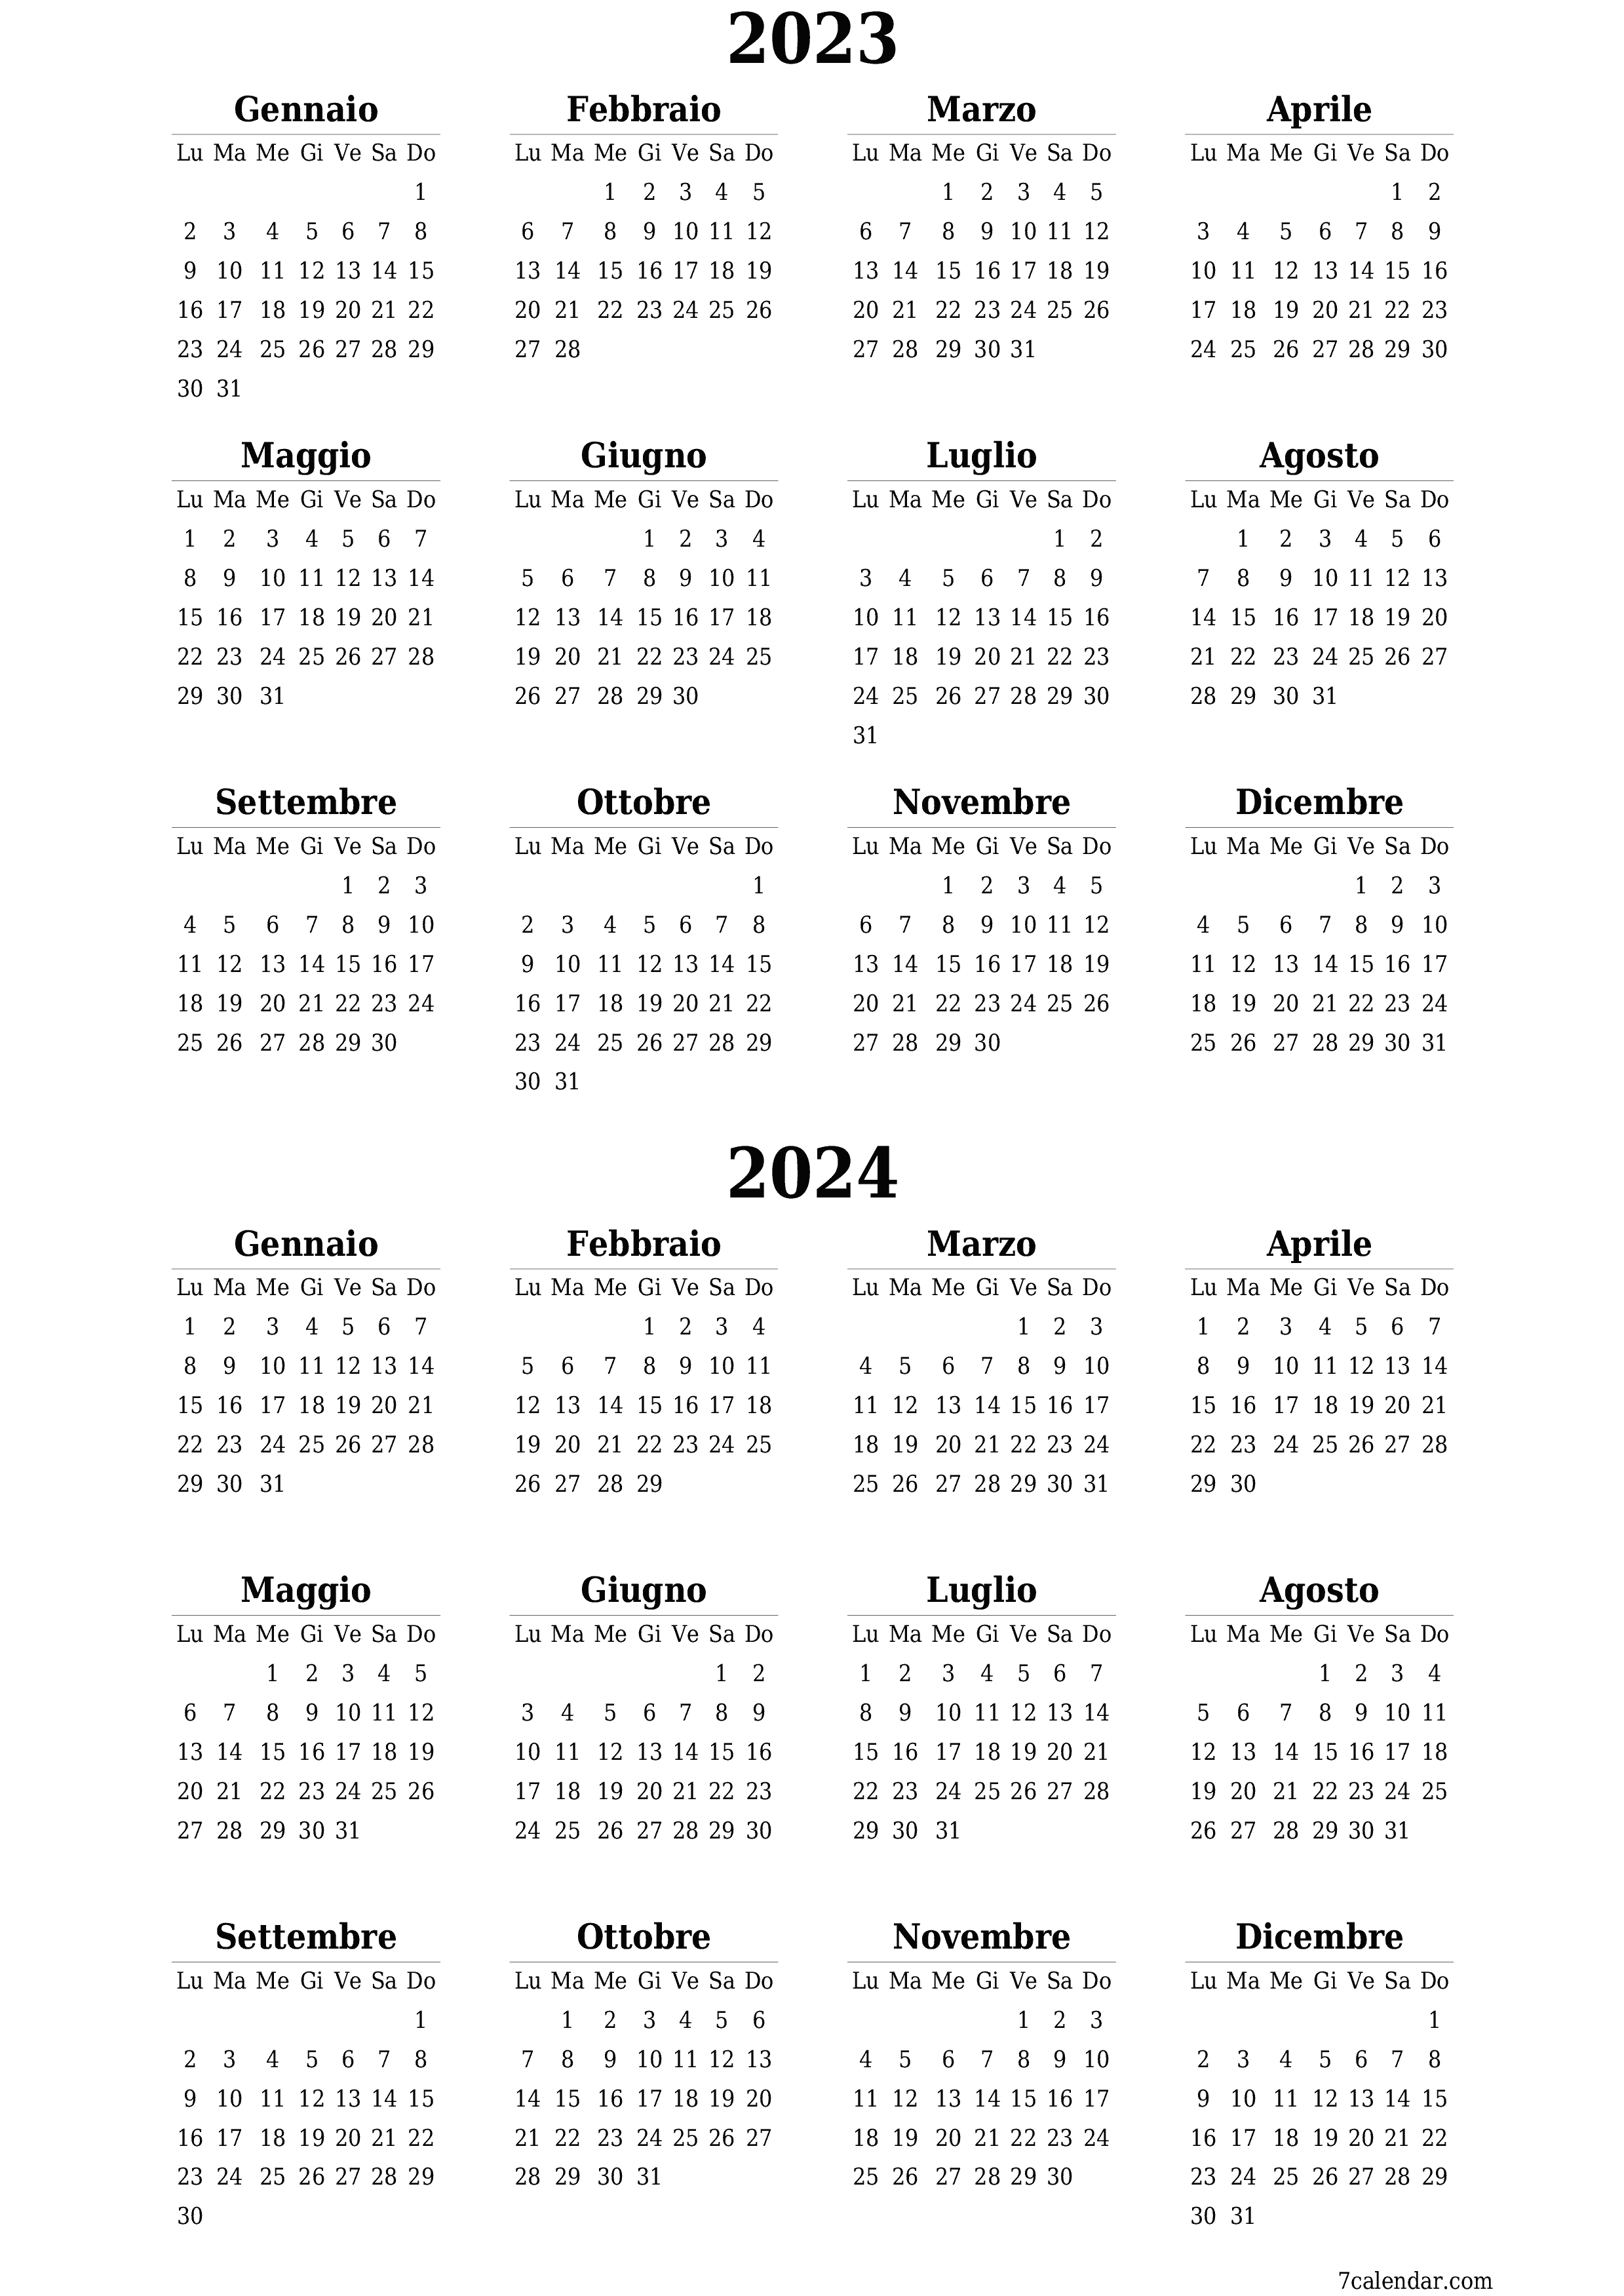  stampabile da parete modello di gratuitoverticale Annuale calendario Marzo (Mar) 2023